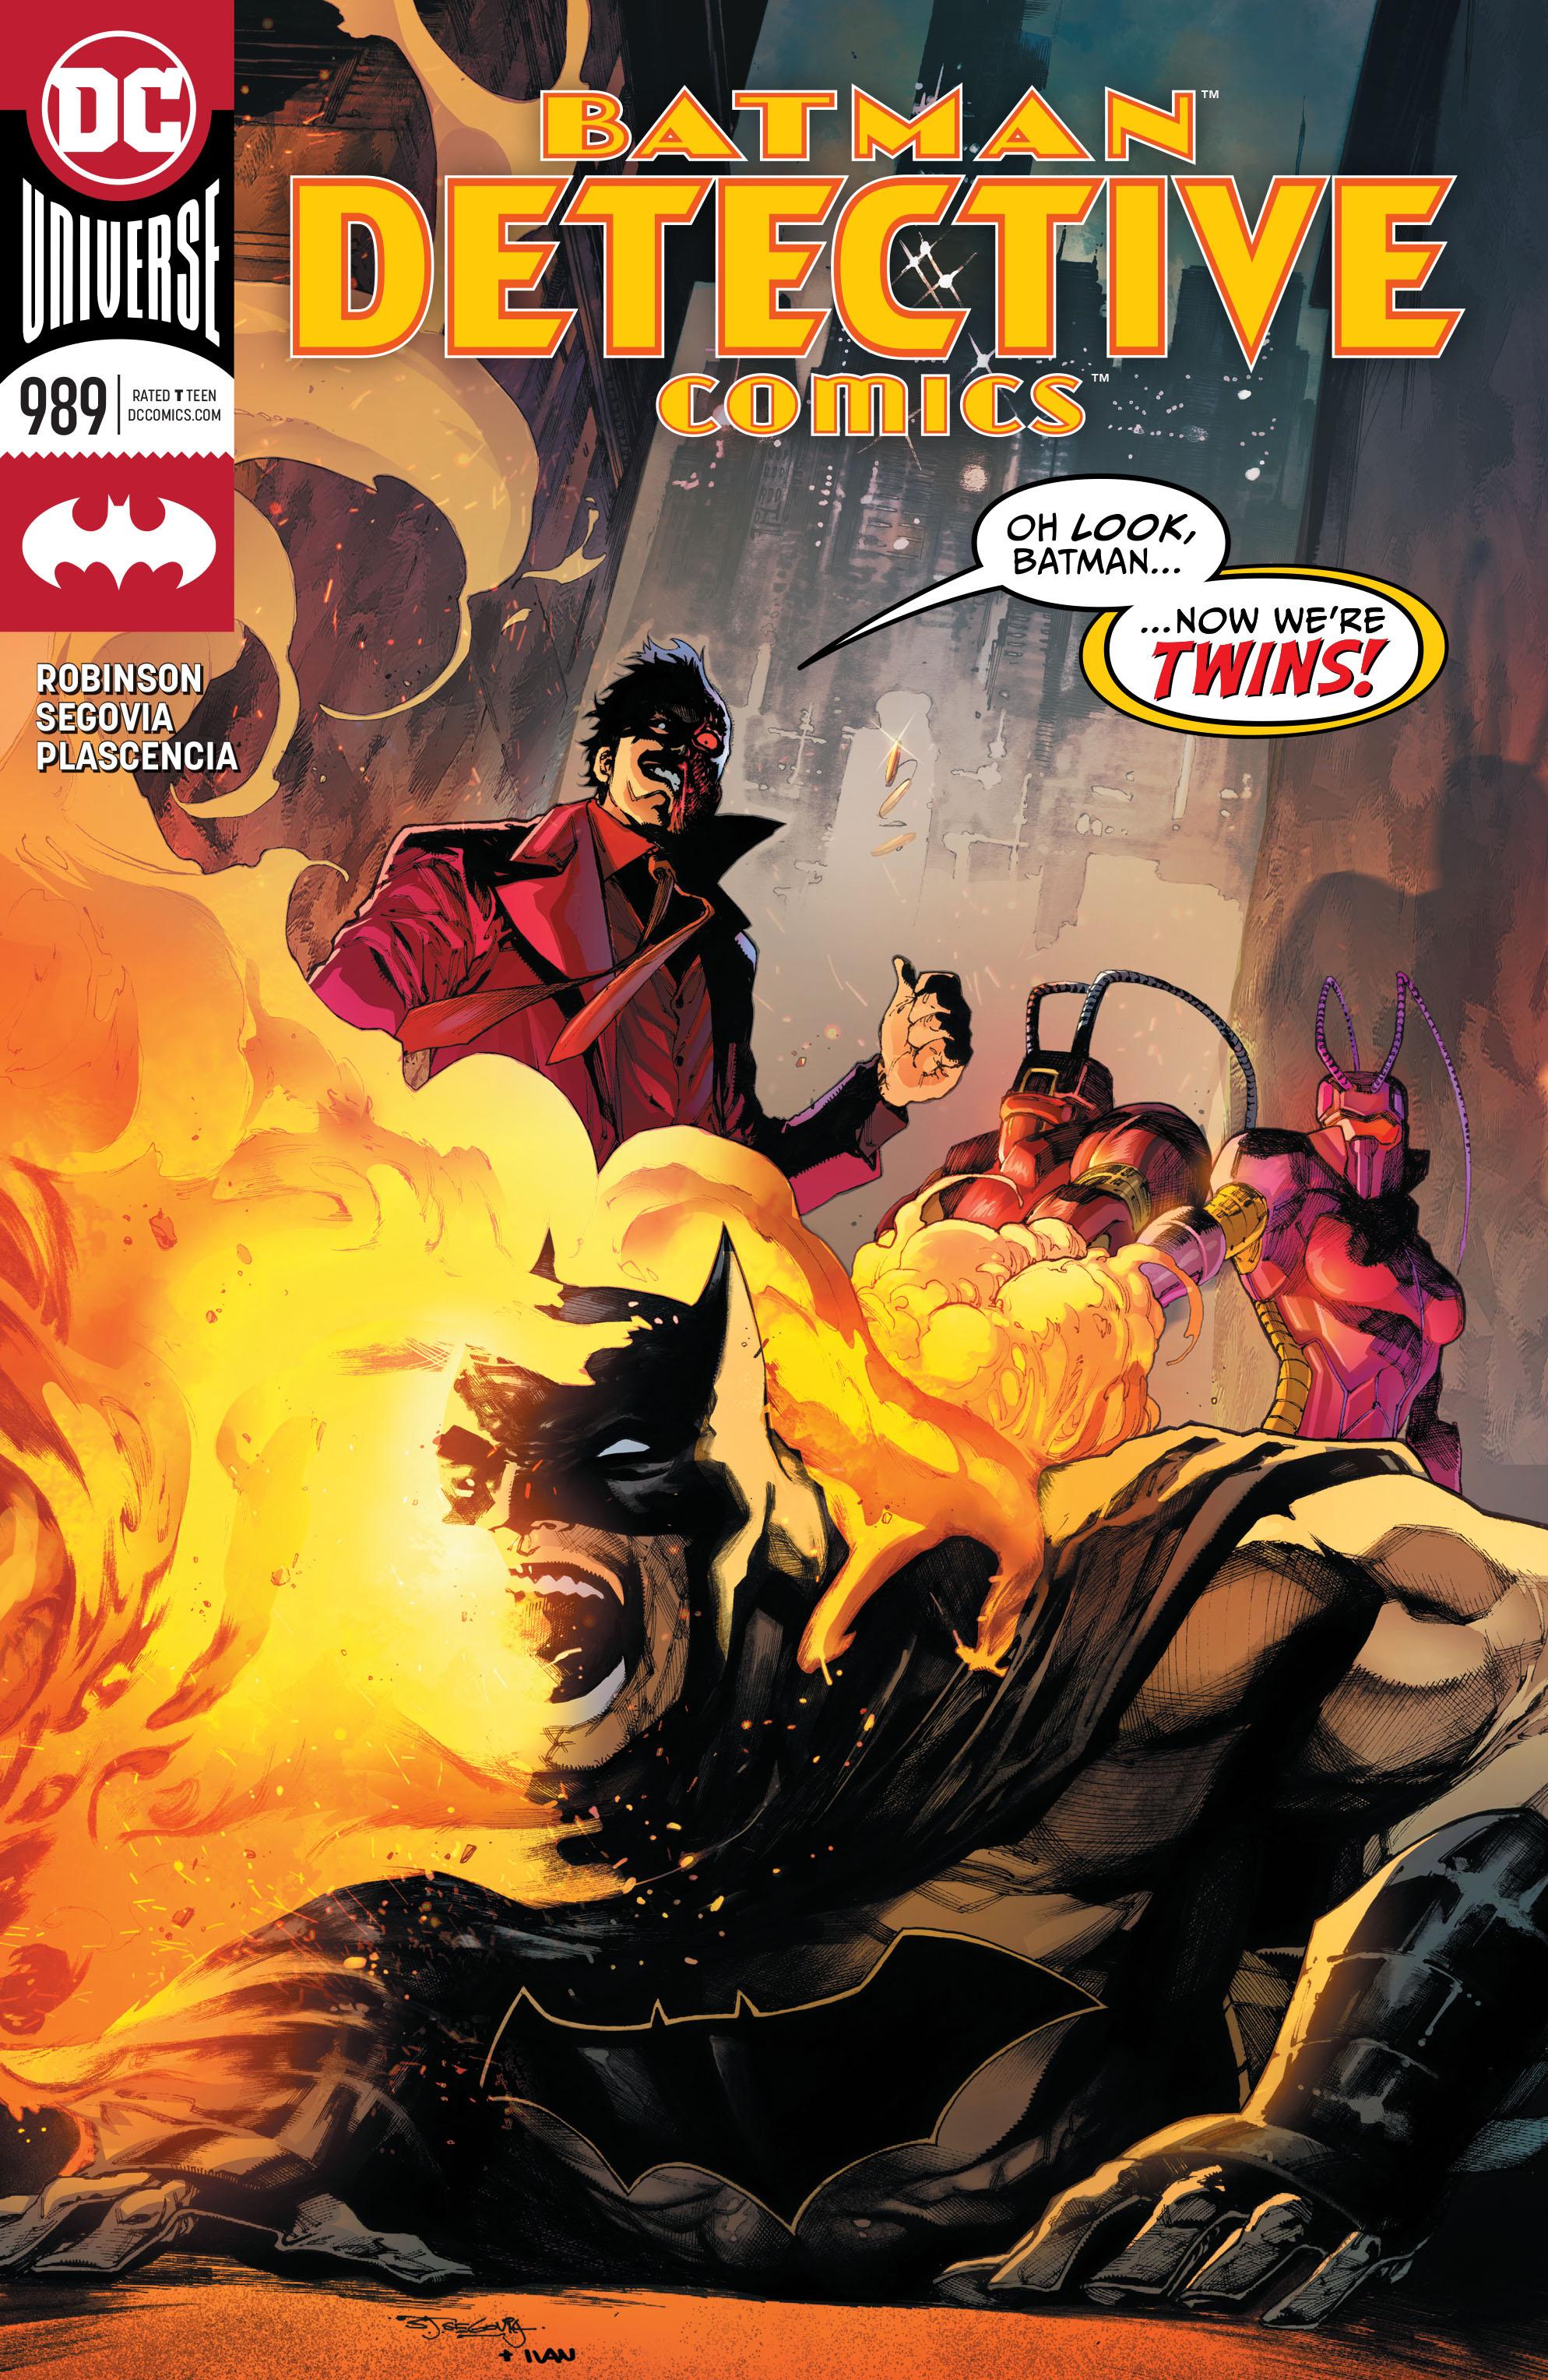 Detective Comics Vol. 1 #989